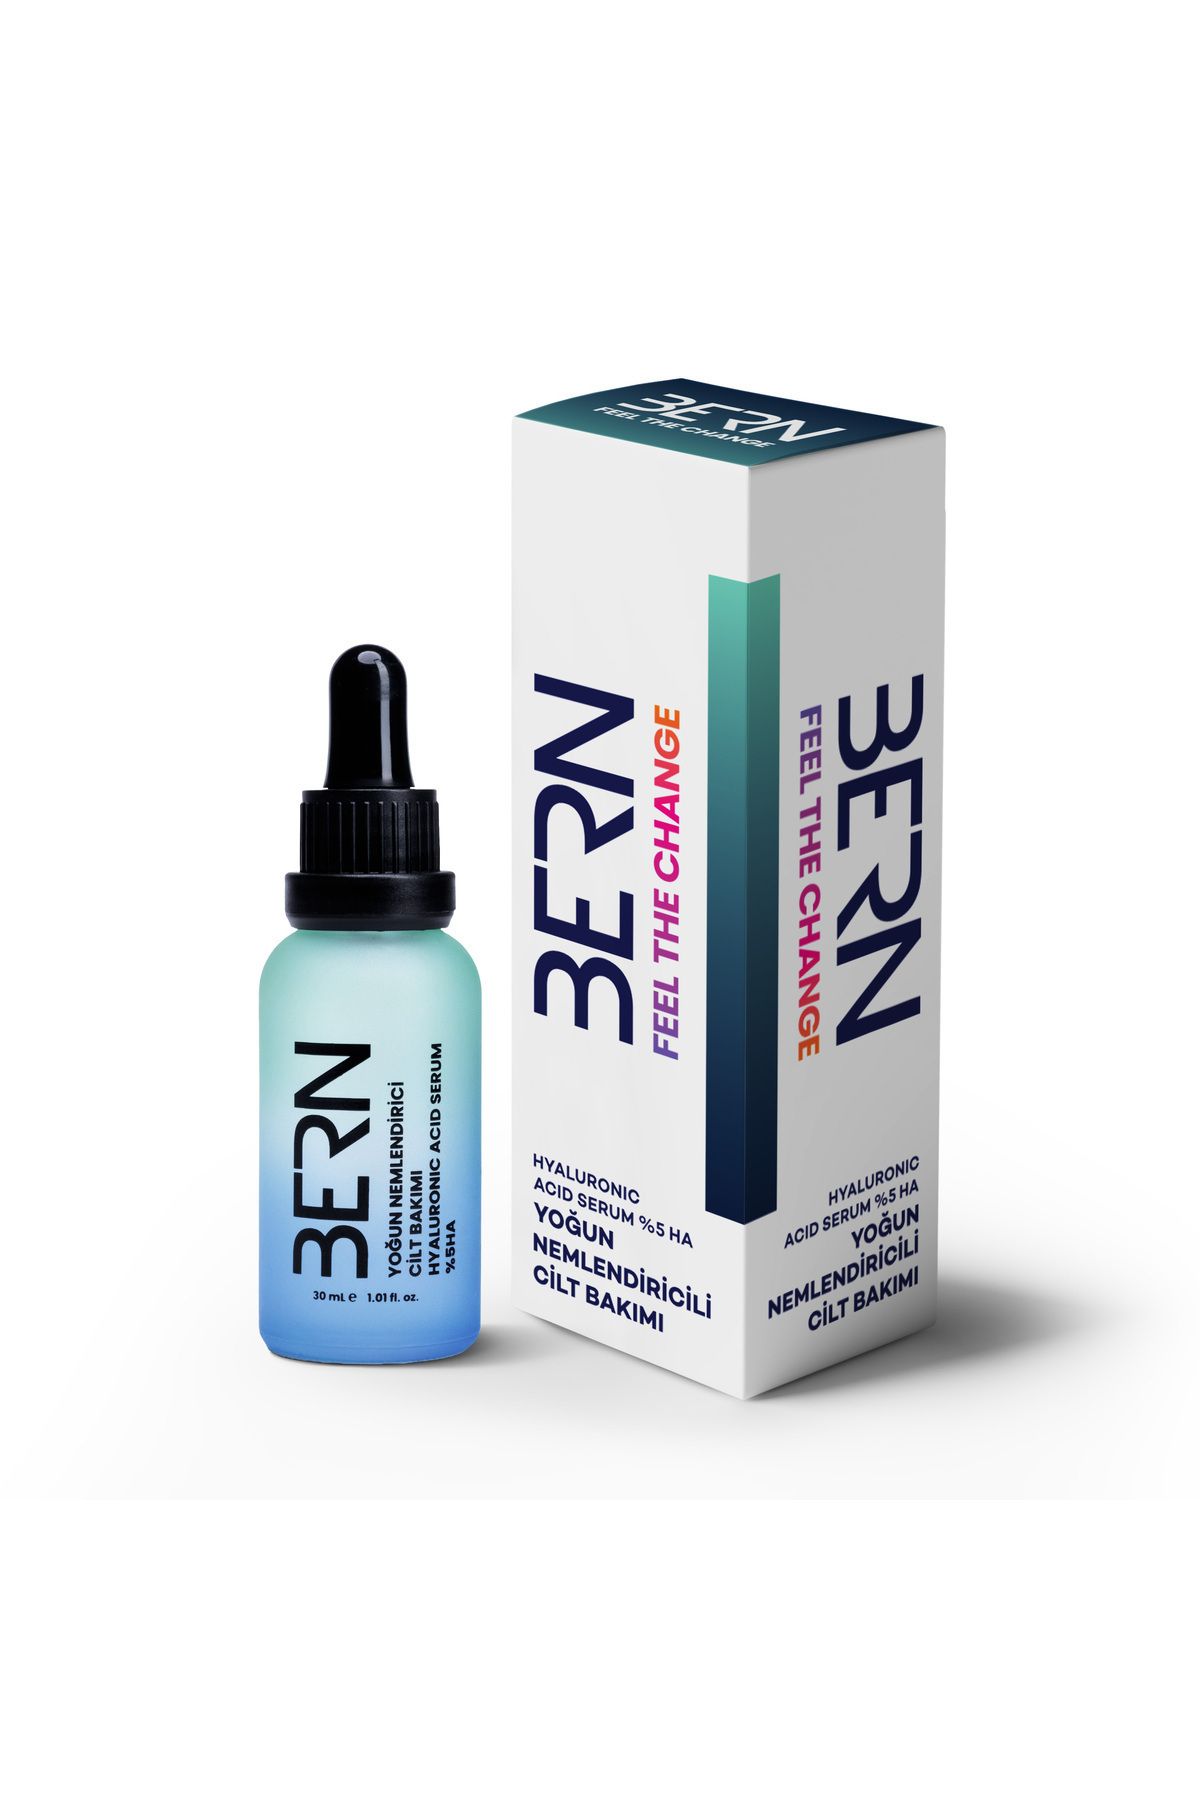 Bern Cosmetics Yoğun Nemlendirici Cilt Bakım Serumu %5 Hyaluronic Acid